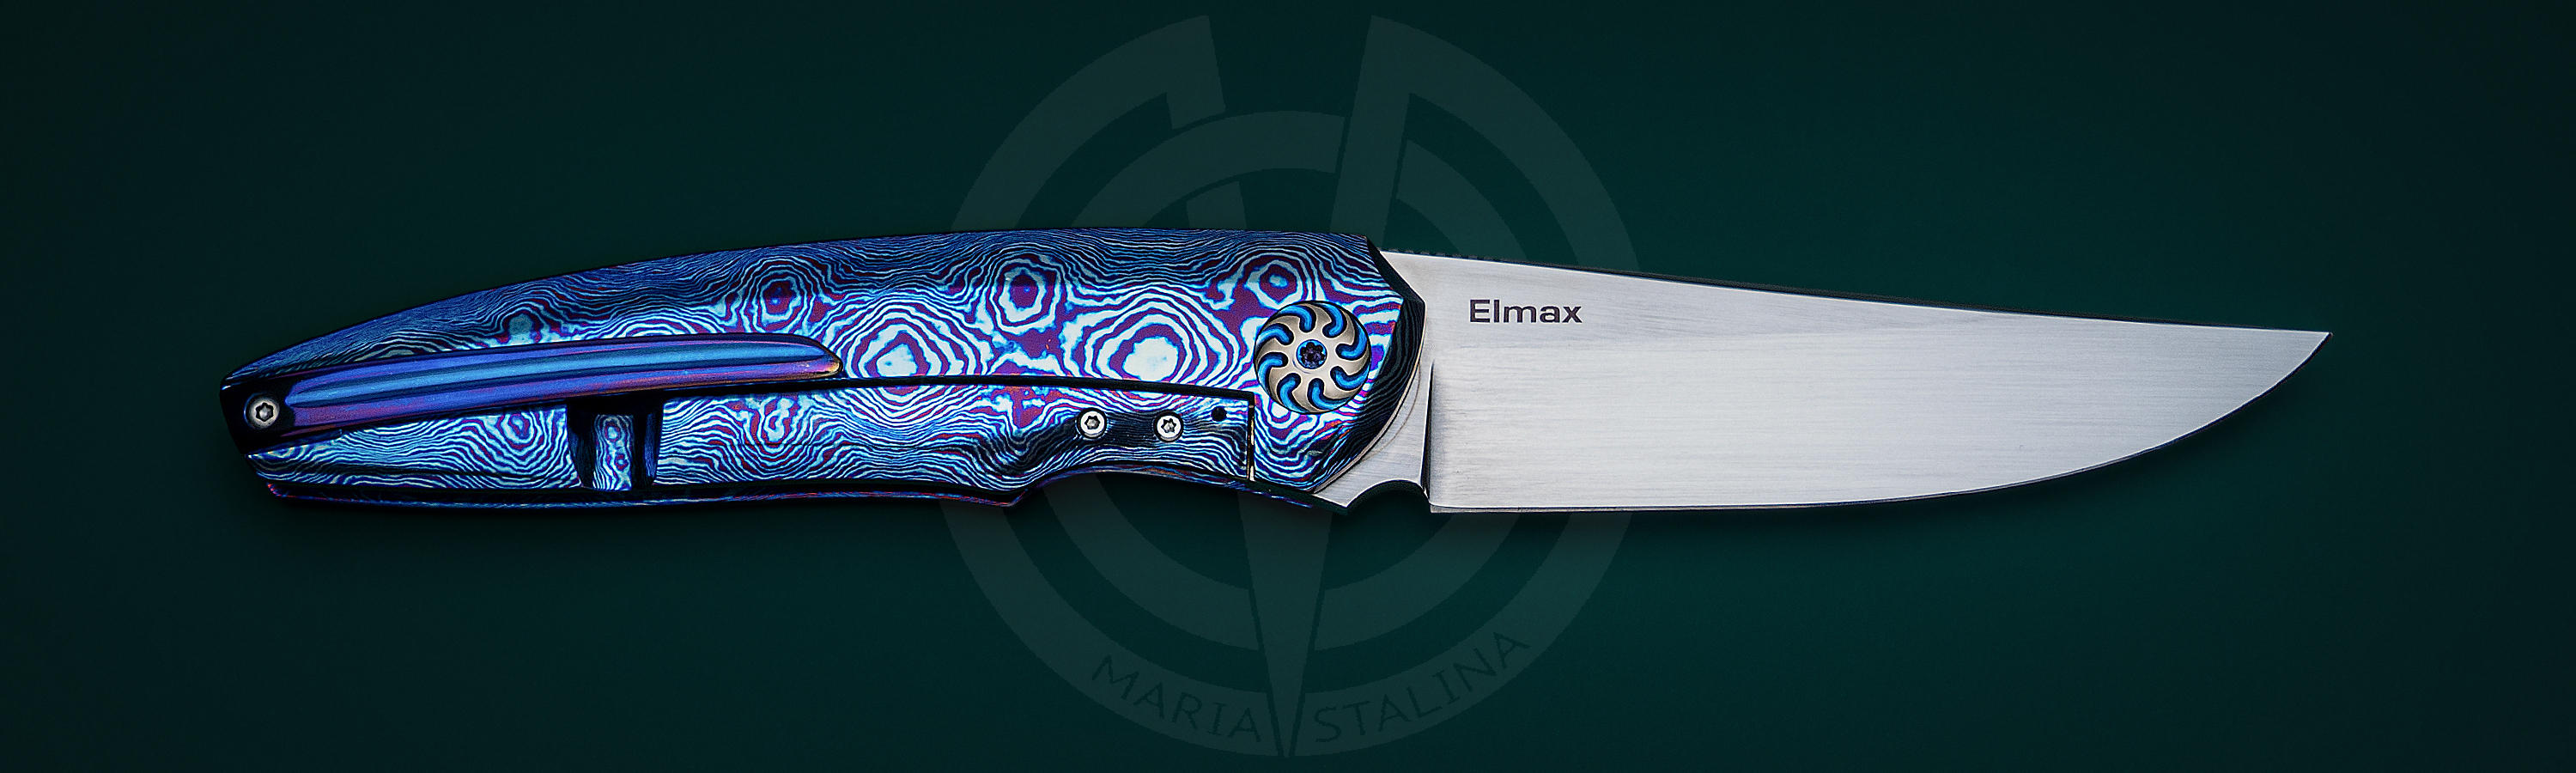 Клинок Elmax ножа Northern